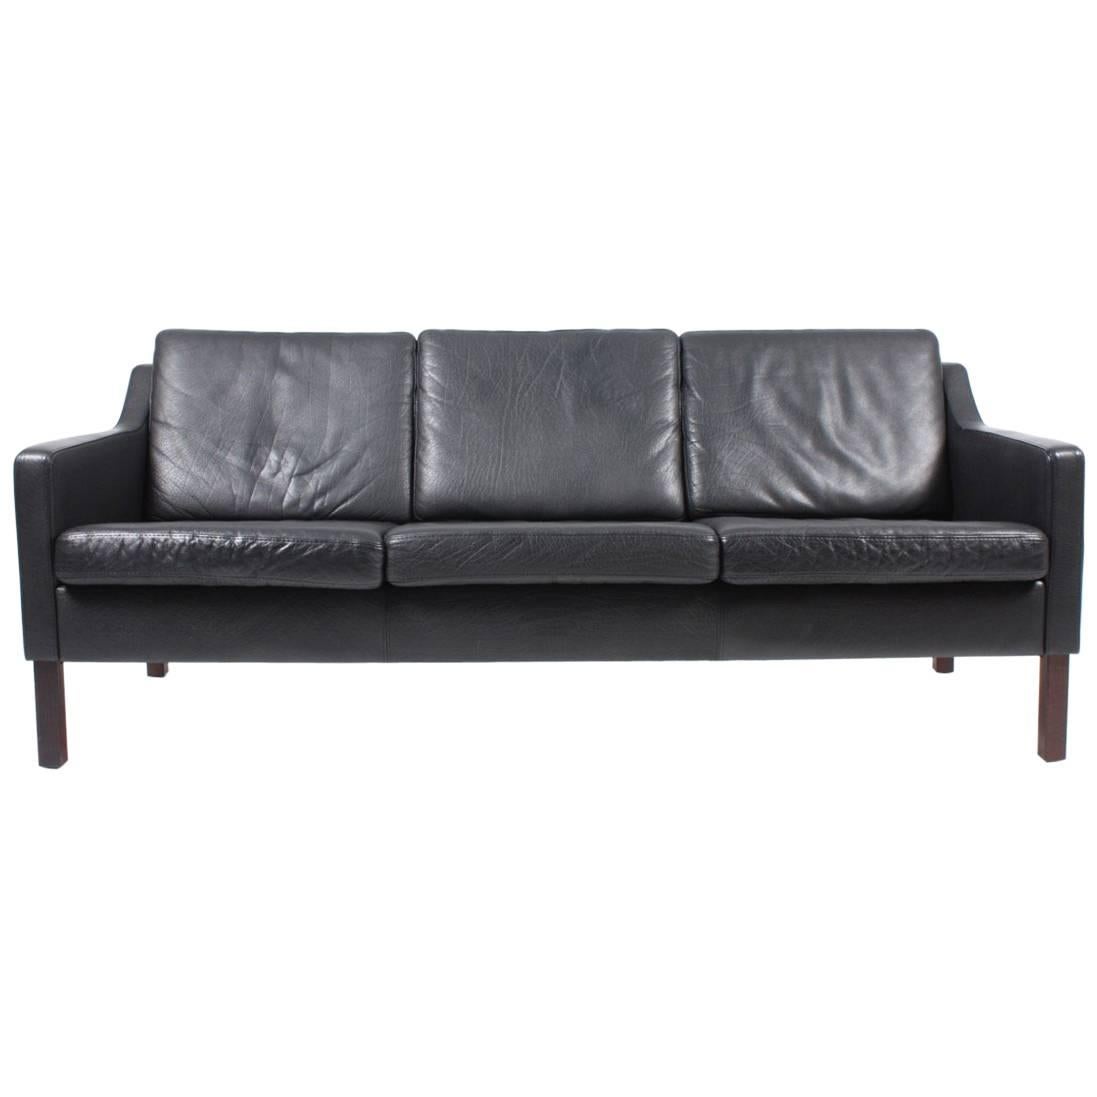 Danish Three-Seat Leather Sofa